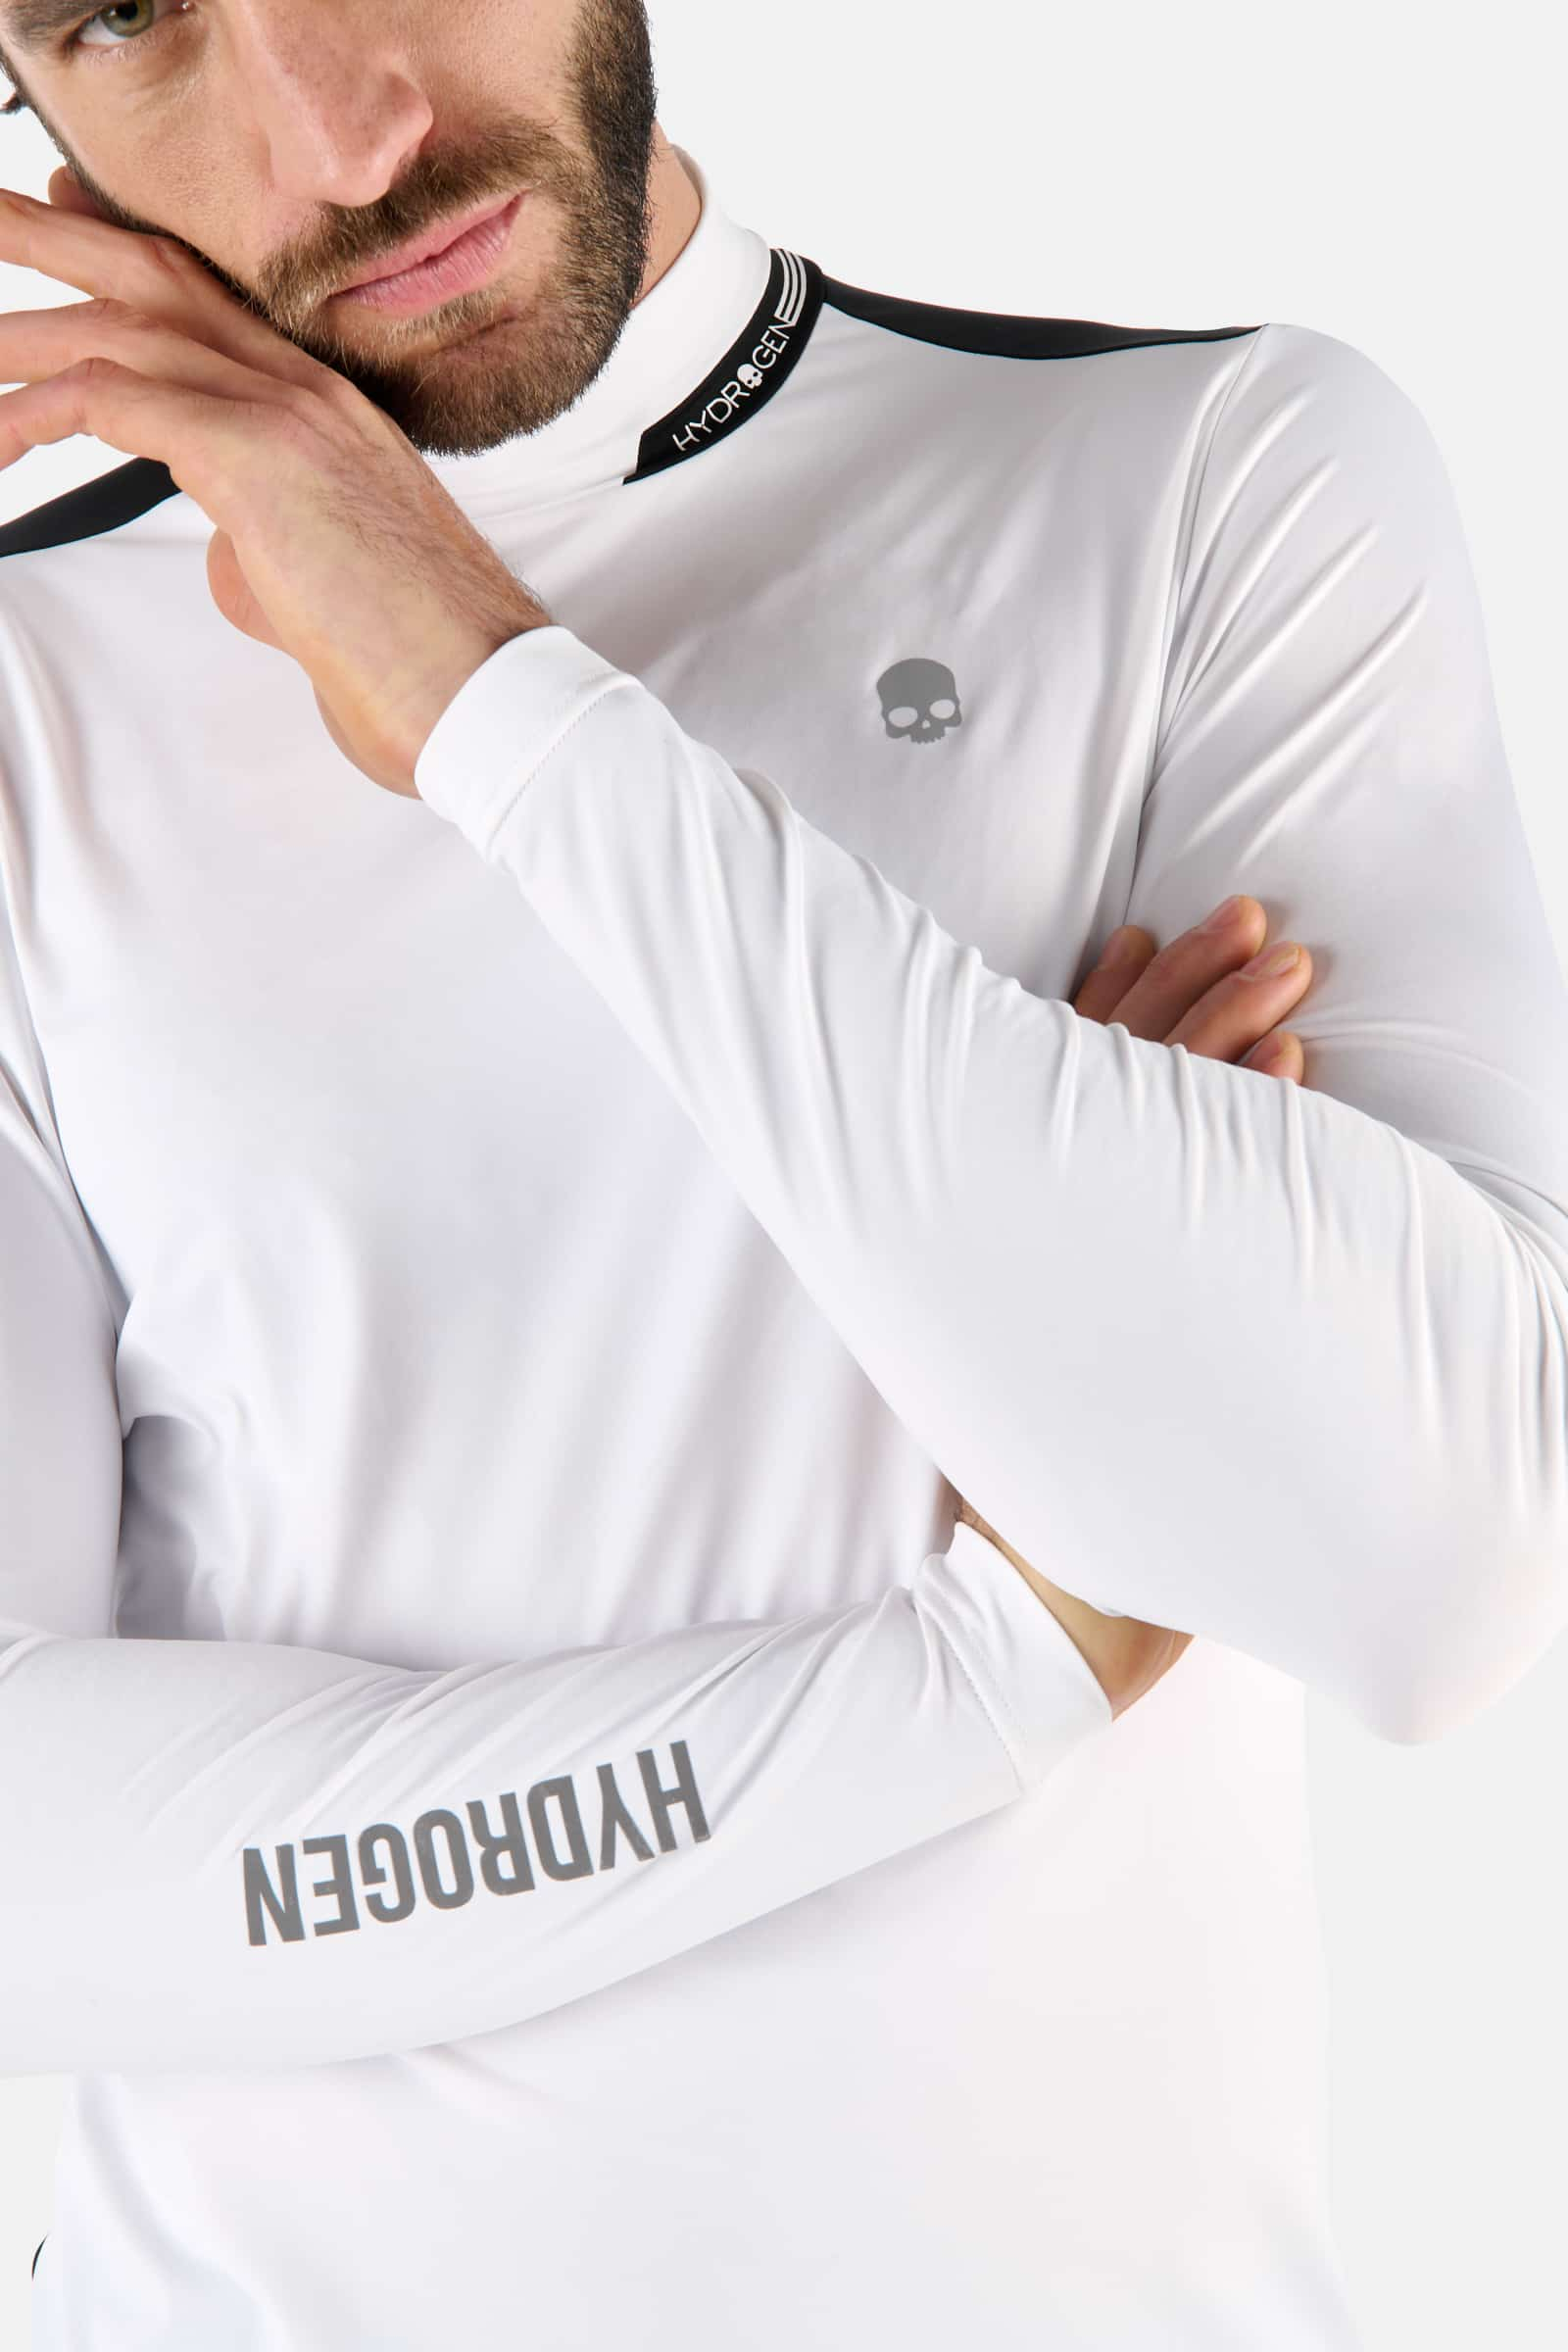 ROLL NECK LS - WHITE,BLACK - Hydrogen - Luxury Sportwear